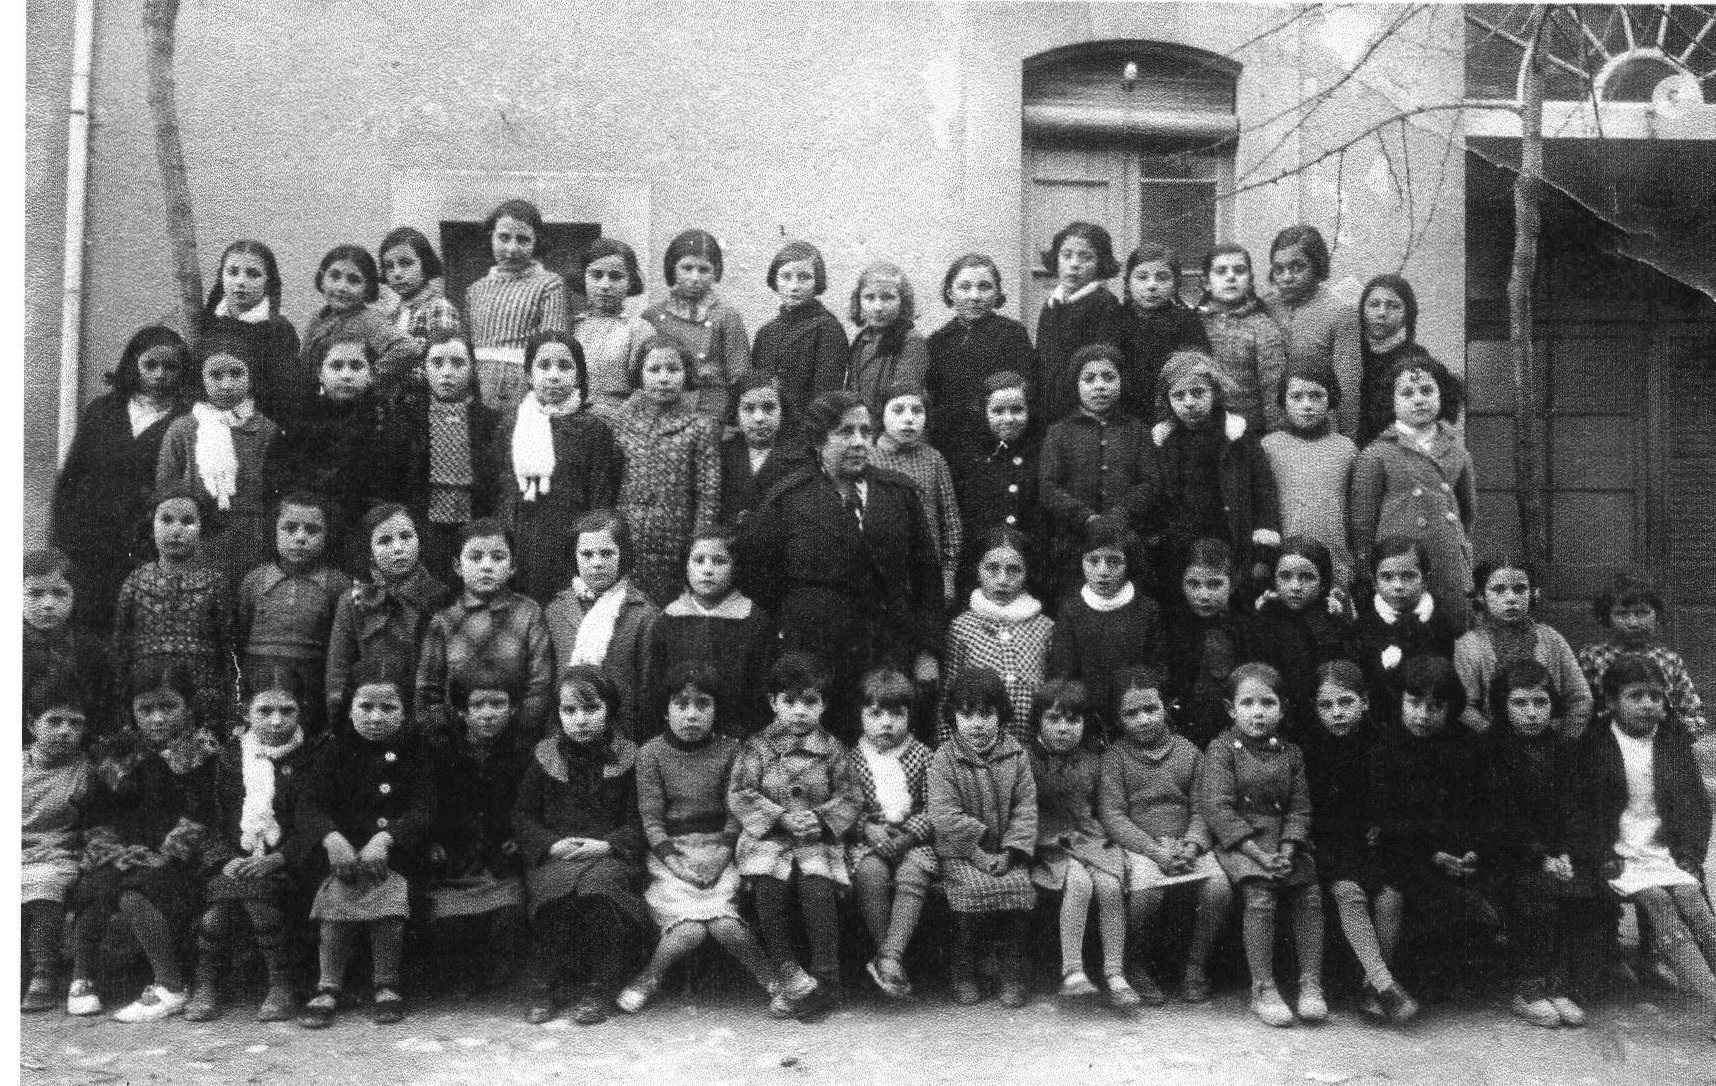 Nens escola davant de cal benetó-1935-37-ASSUMPCIÓ FONT (1)